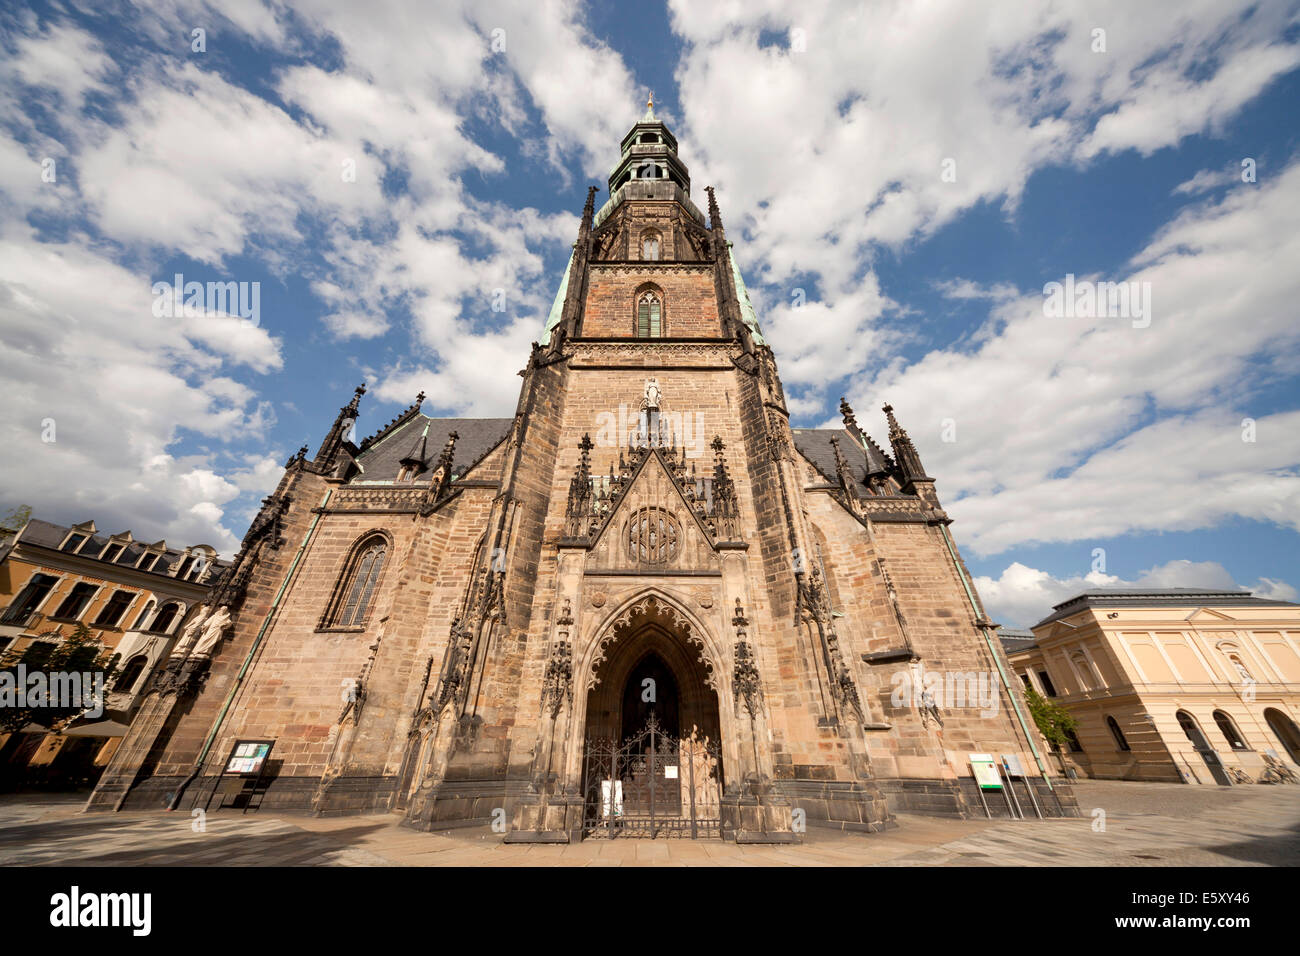 St. Marys church, Zwickau, Saxony, Germany, Europe Stock Photo